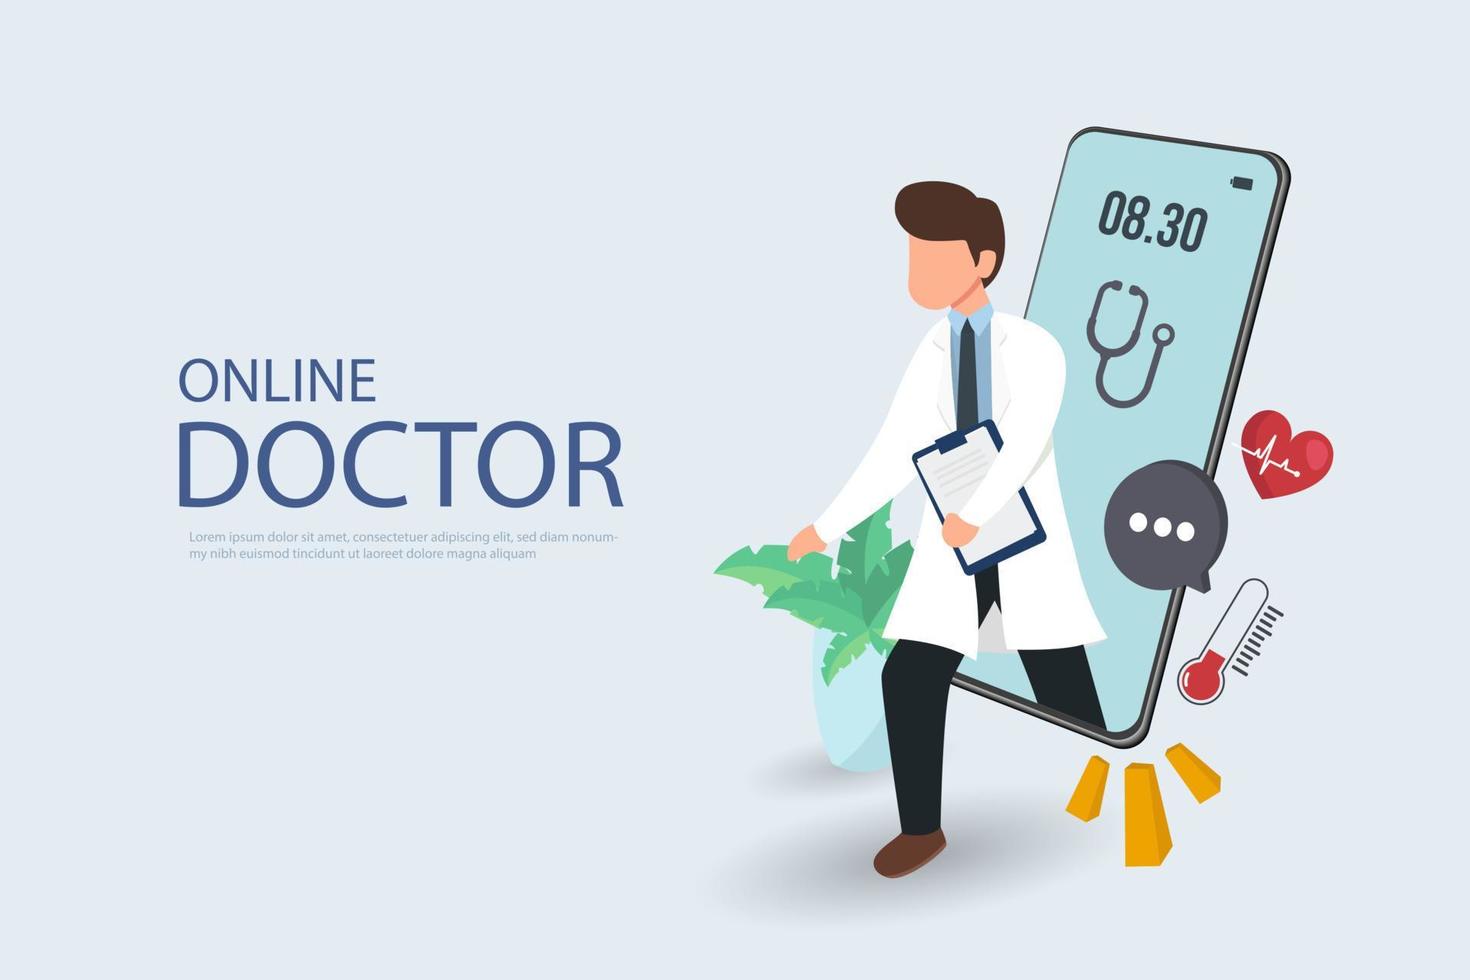 patient rencontrant un médecin professionnel en ligne sur un smartphone et se serrant la main, concept de consultation médicale en ligne vecteur